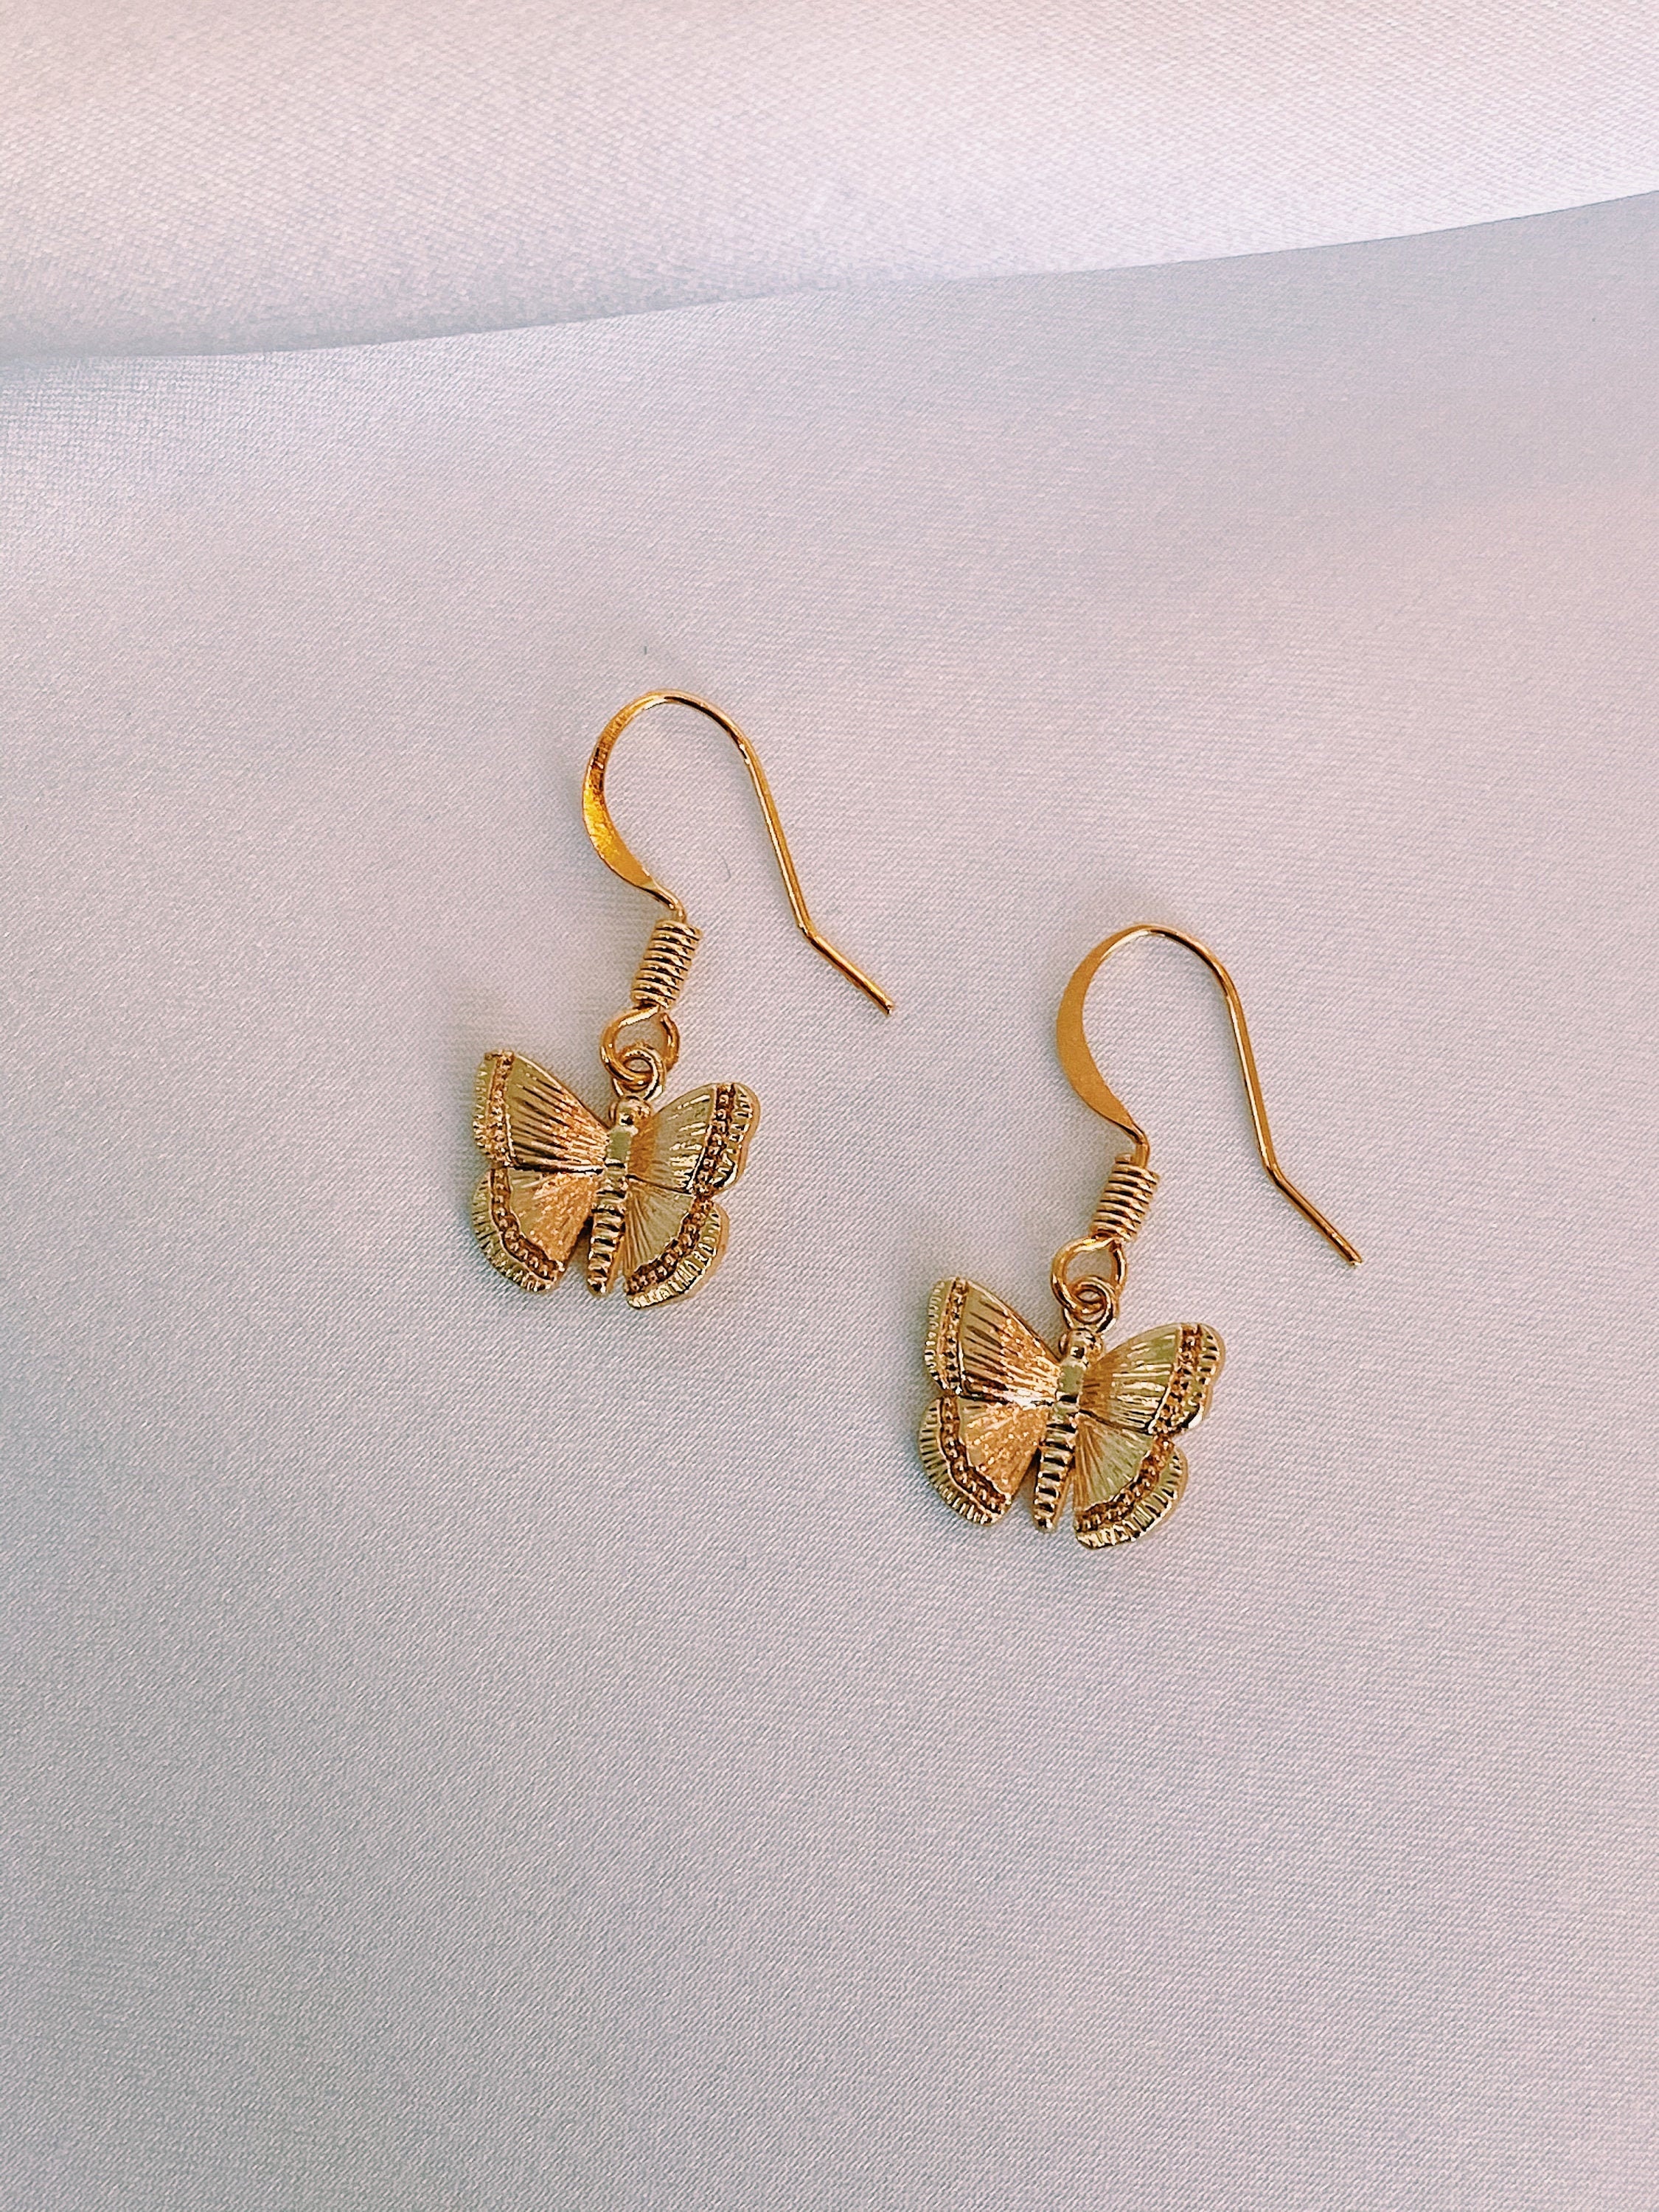 Gold Butterfly flutter Earrings Hoop Earrings | Etsy